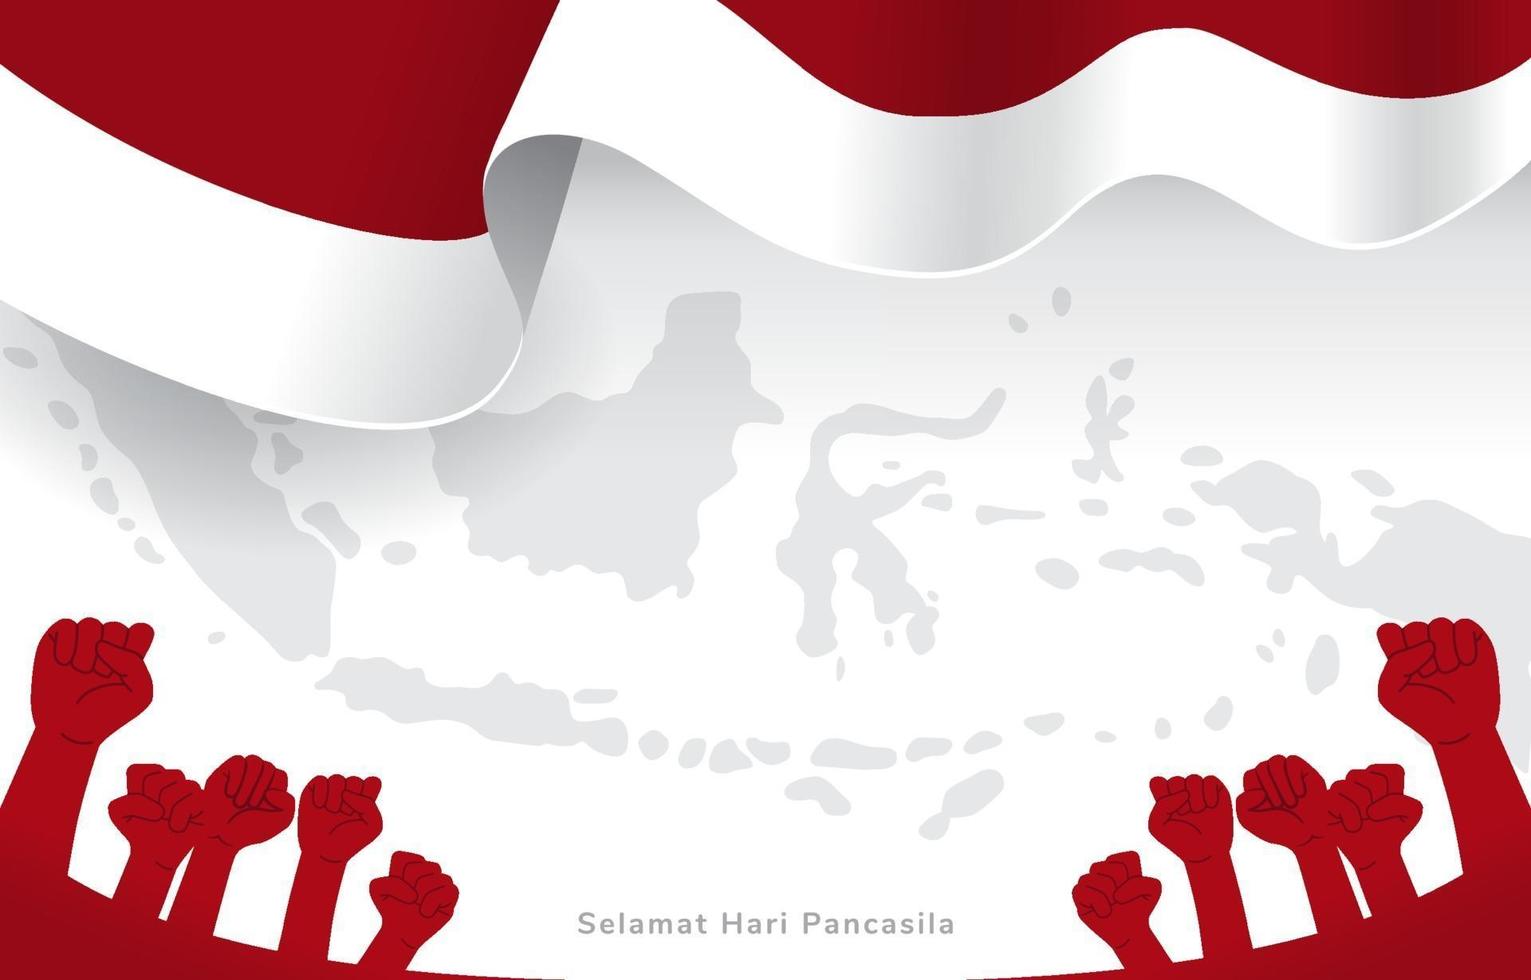 Indonesia celebrando el día de la pancasila con el mapa de Indonesia y el fondo de la bandera vector